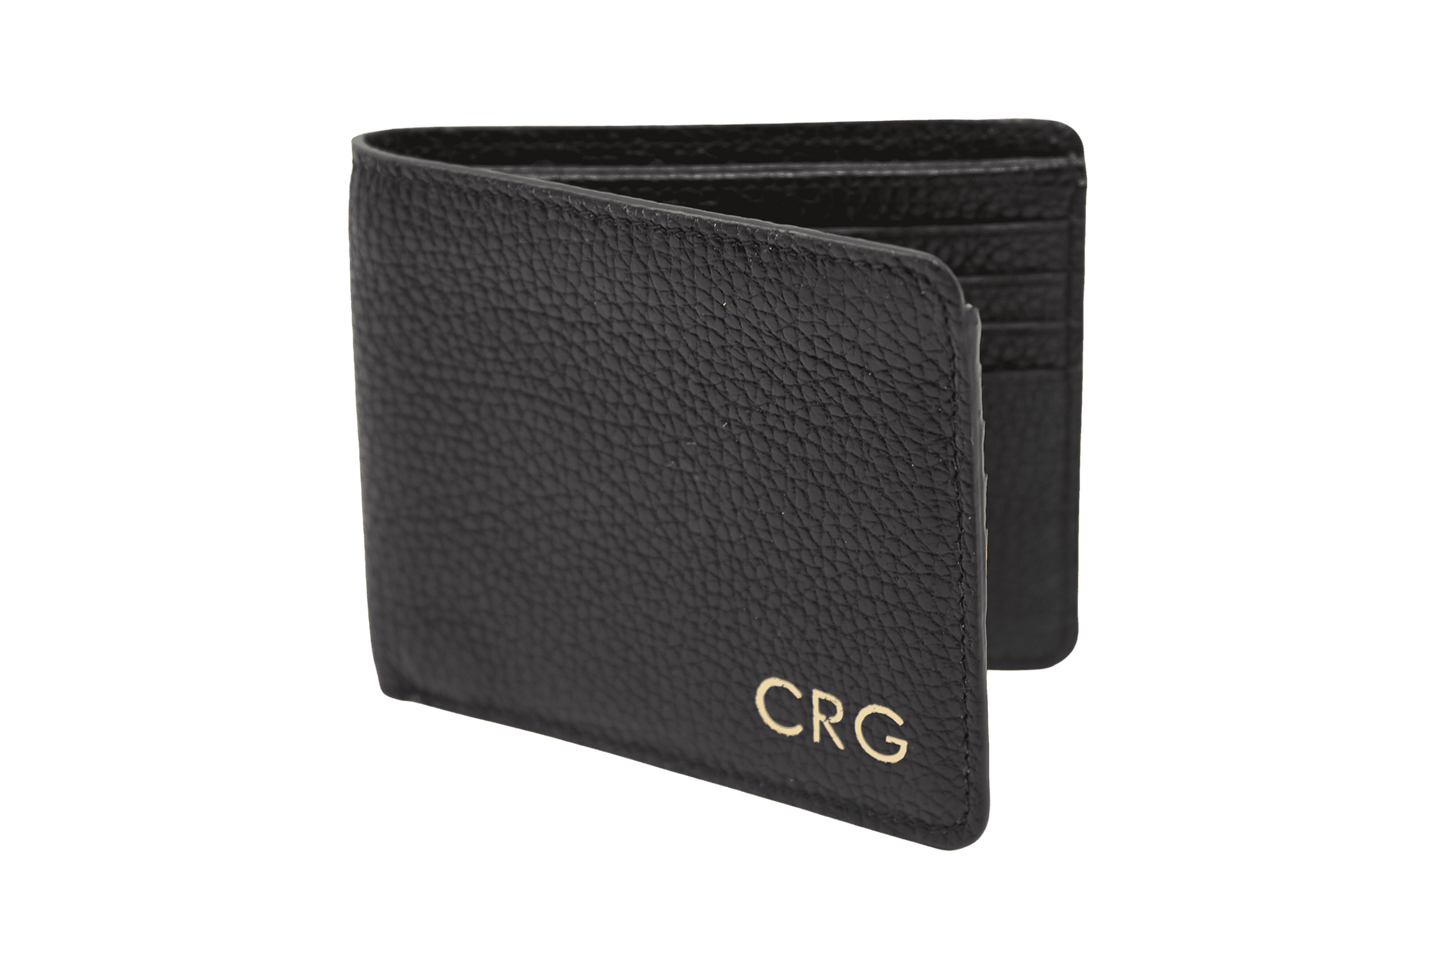 Billetera de cuero color negro con 3 iniciales de personalización , tiene compartimentos para billetes y documentos.